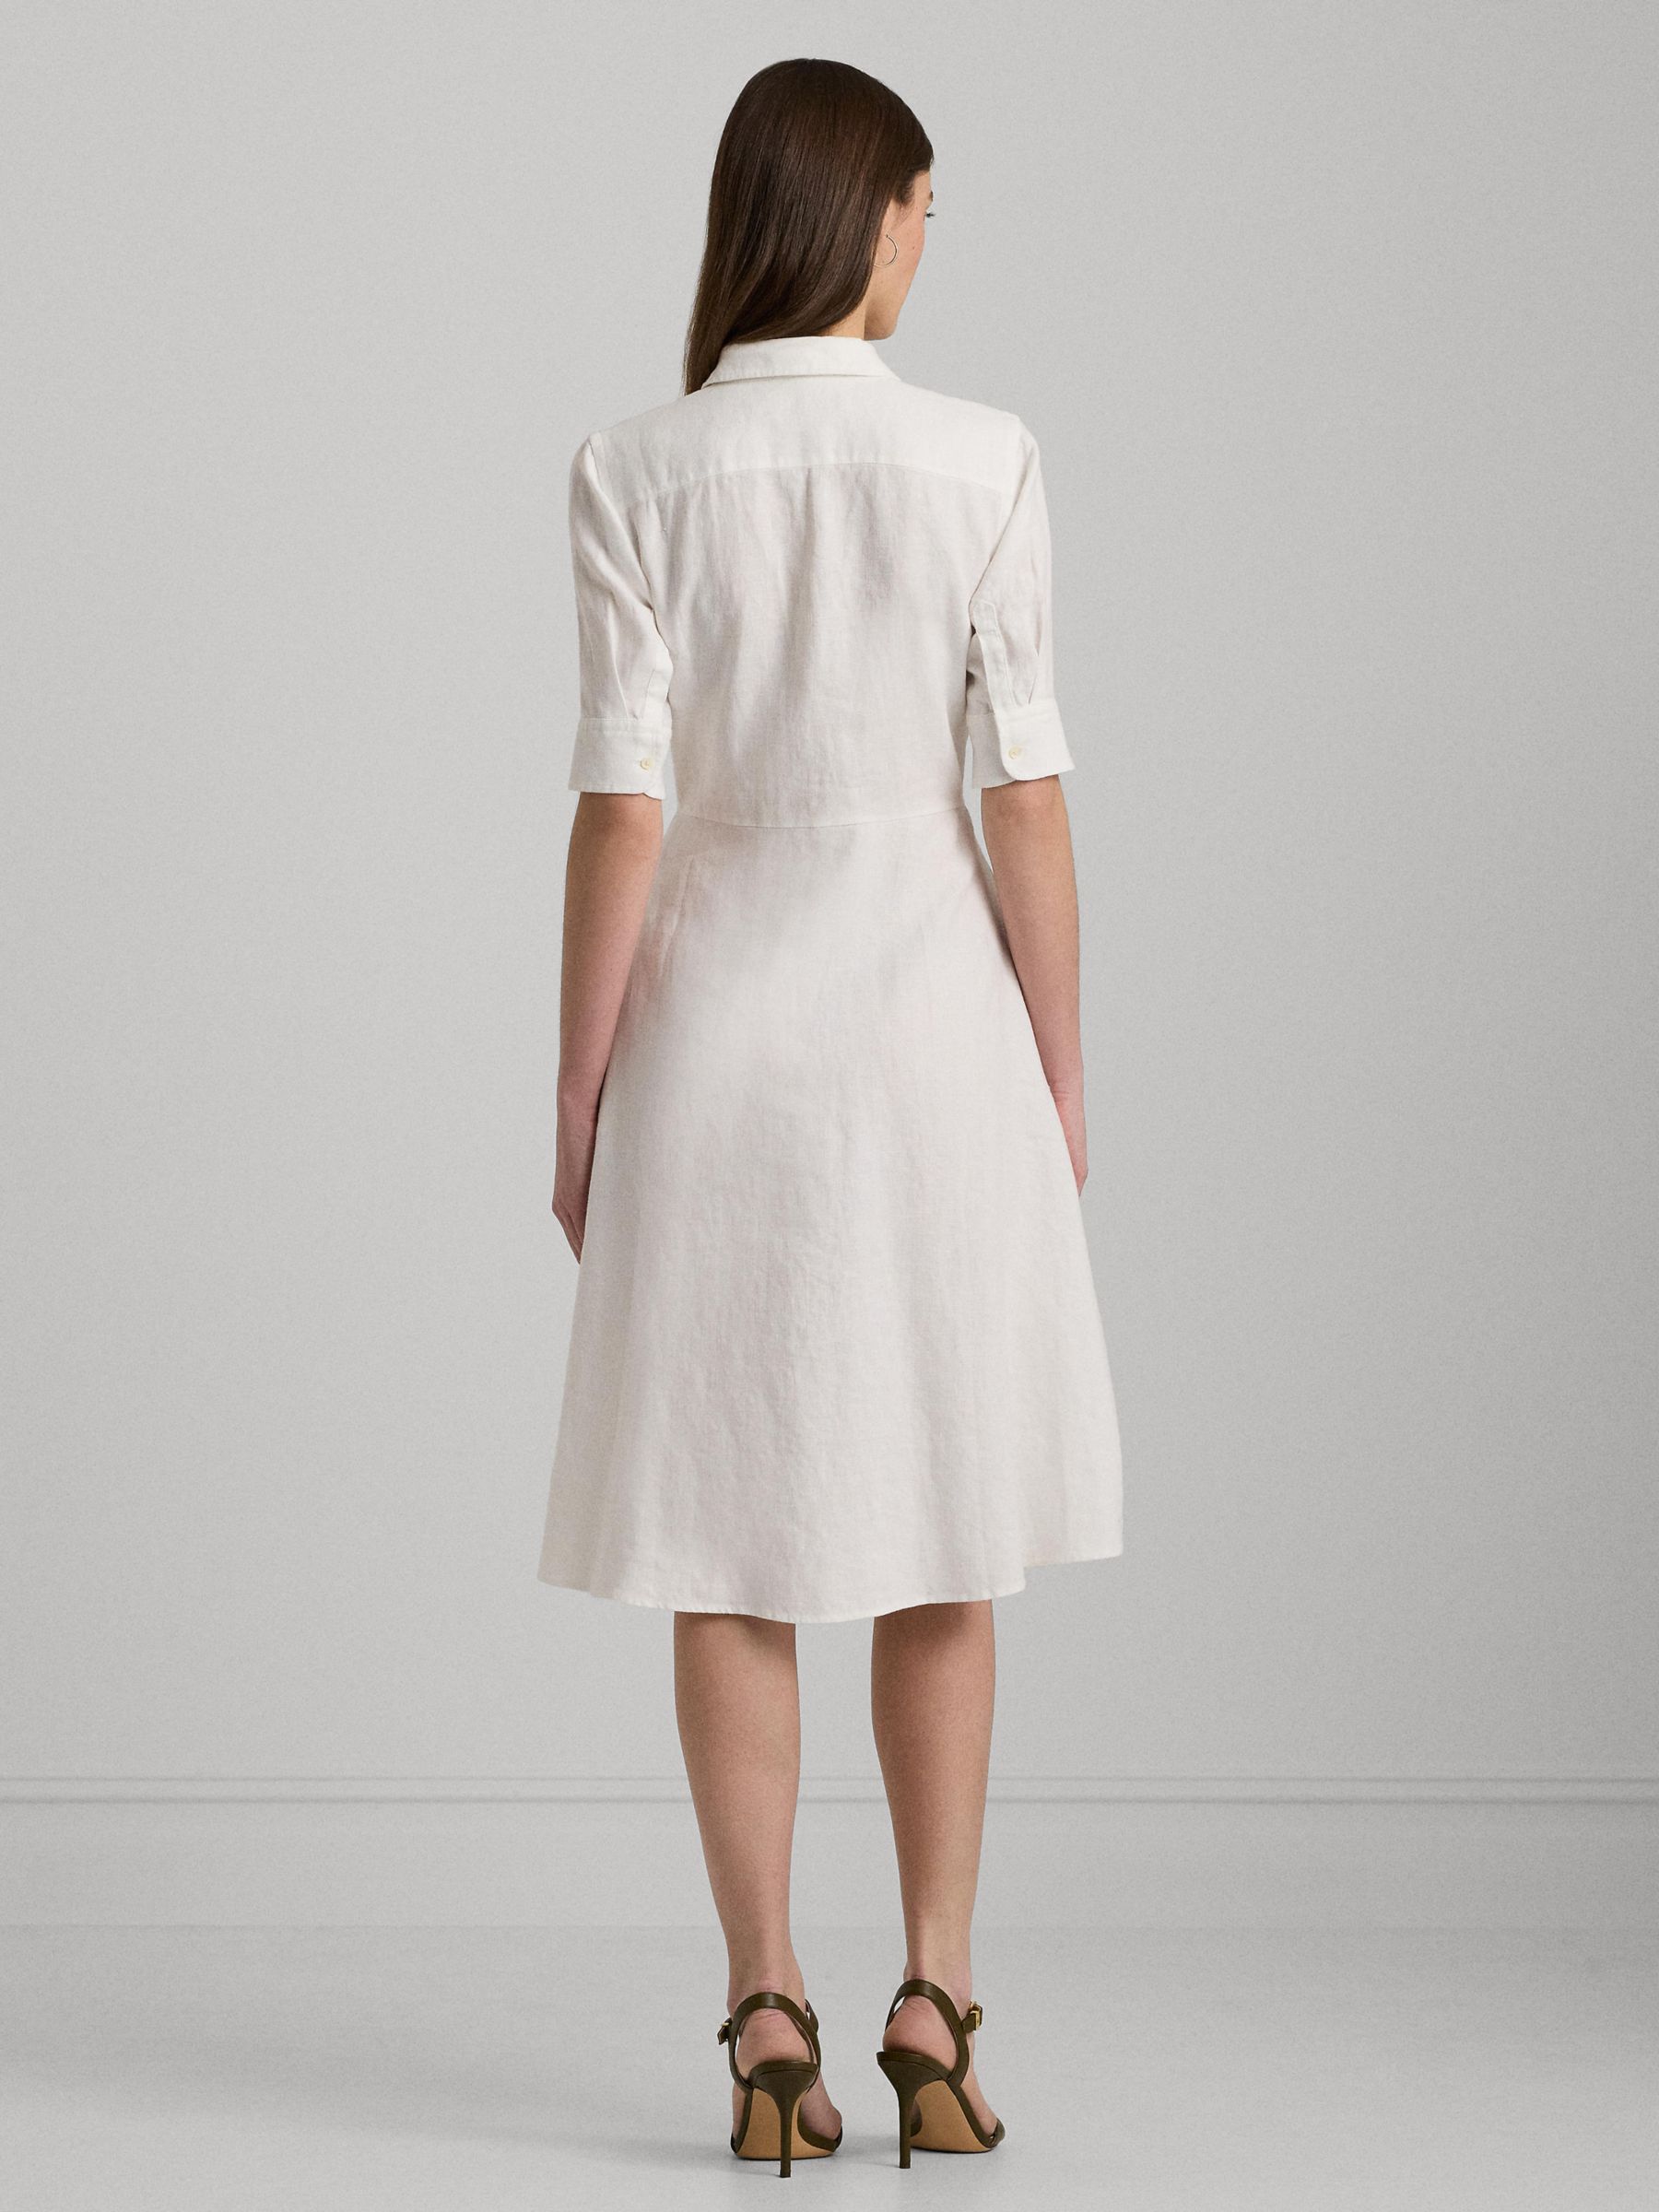 Lauren Ralph Lauren Wakana Linen Shirt Dress, White, 12